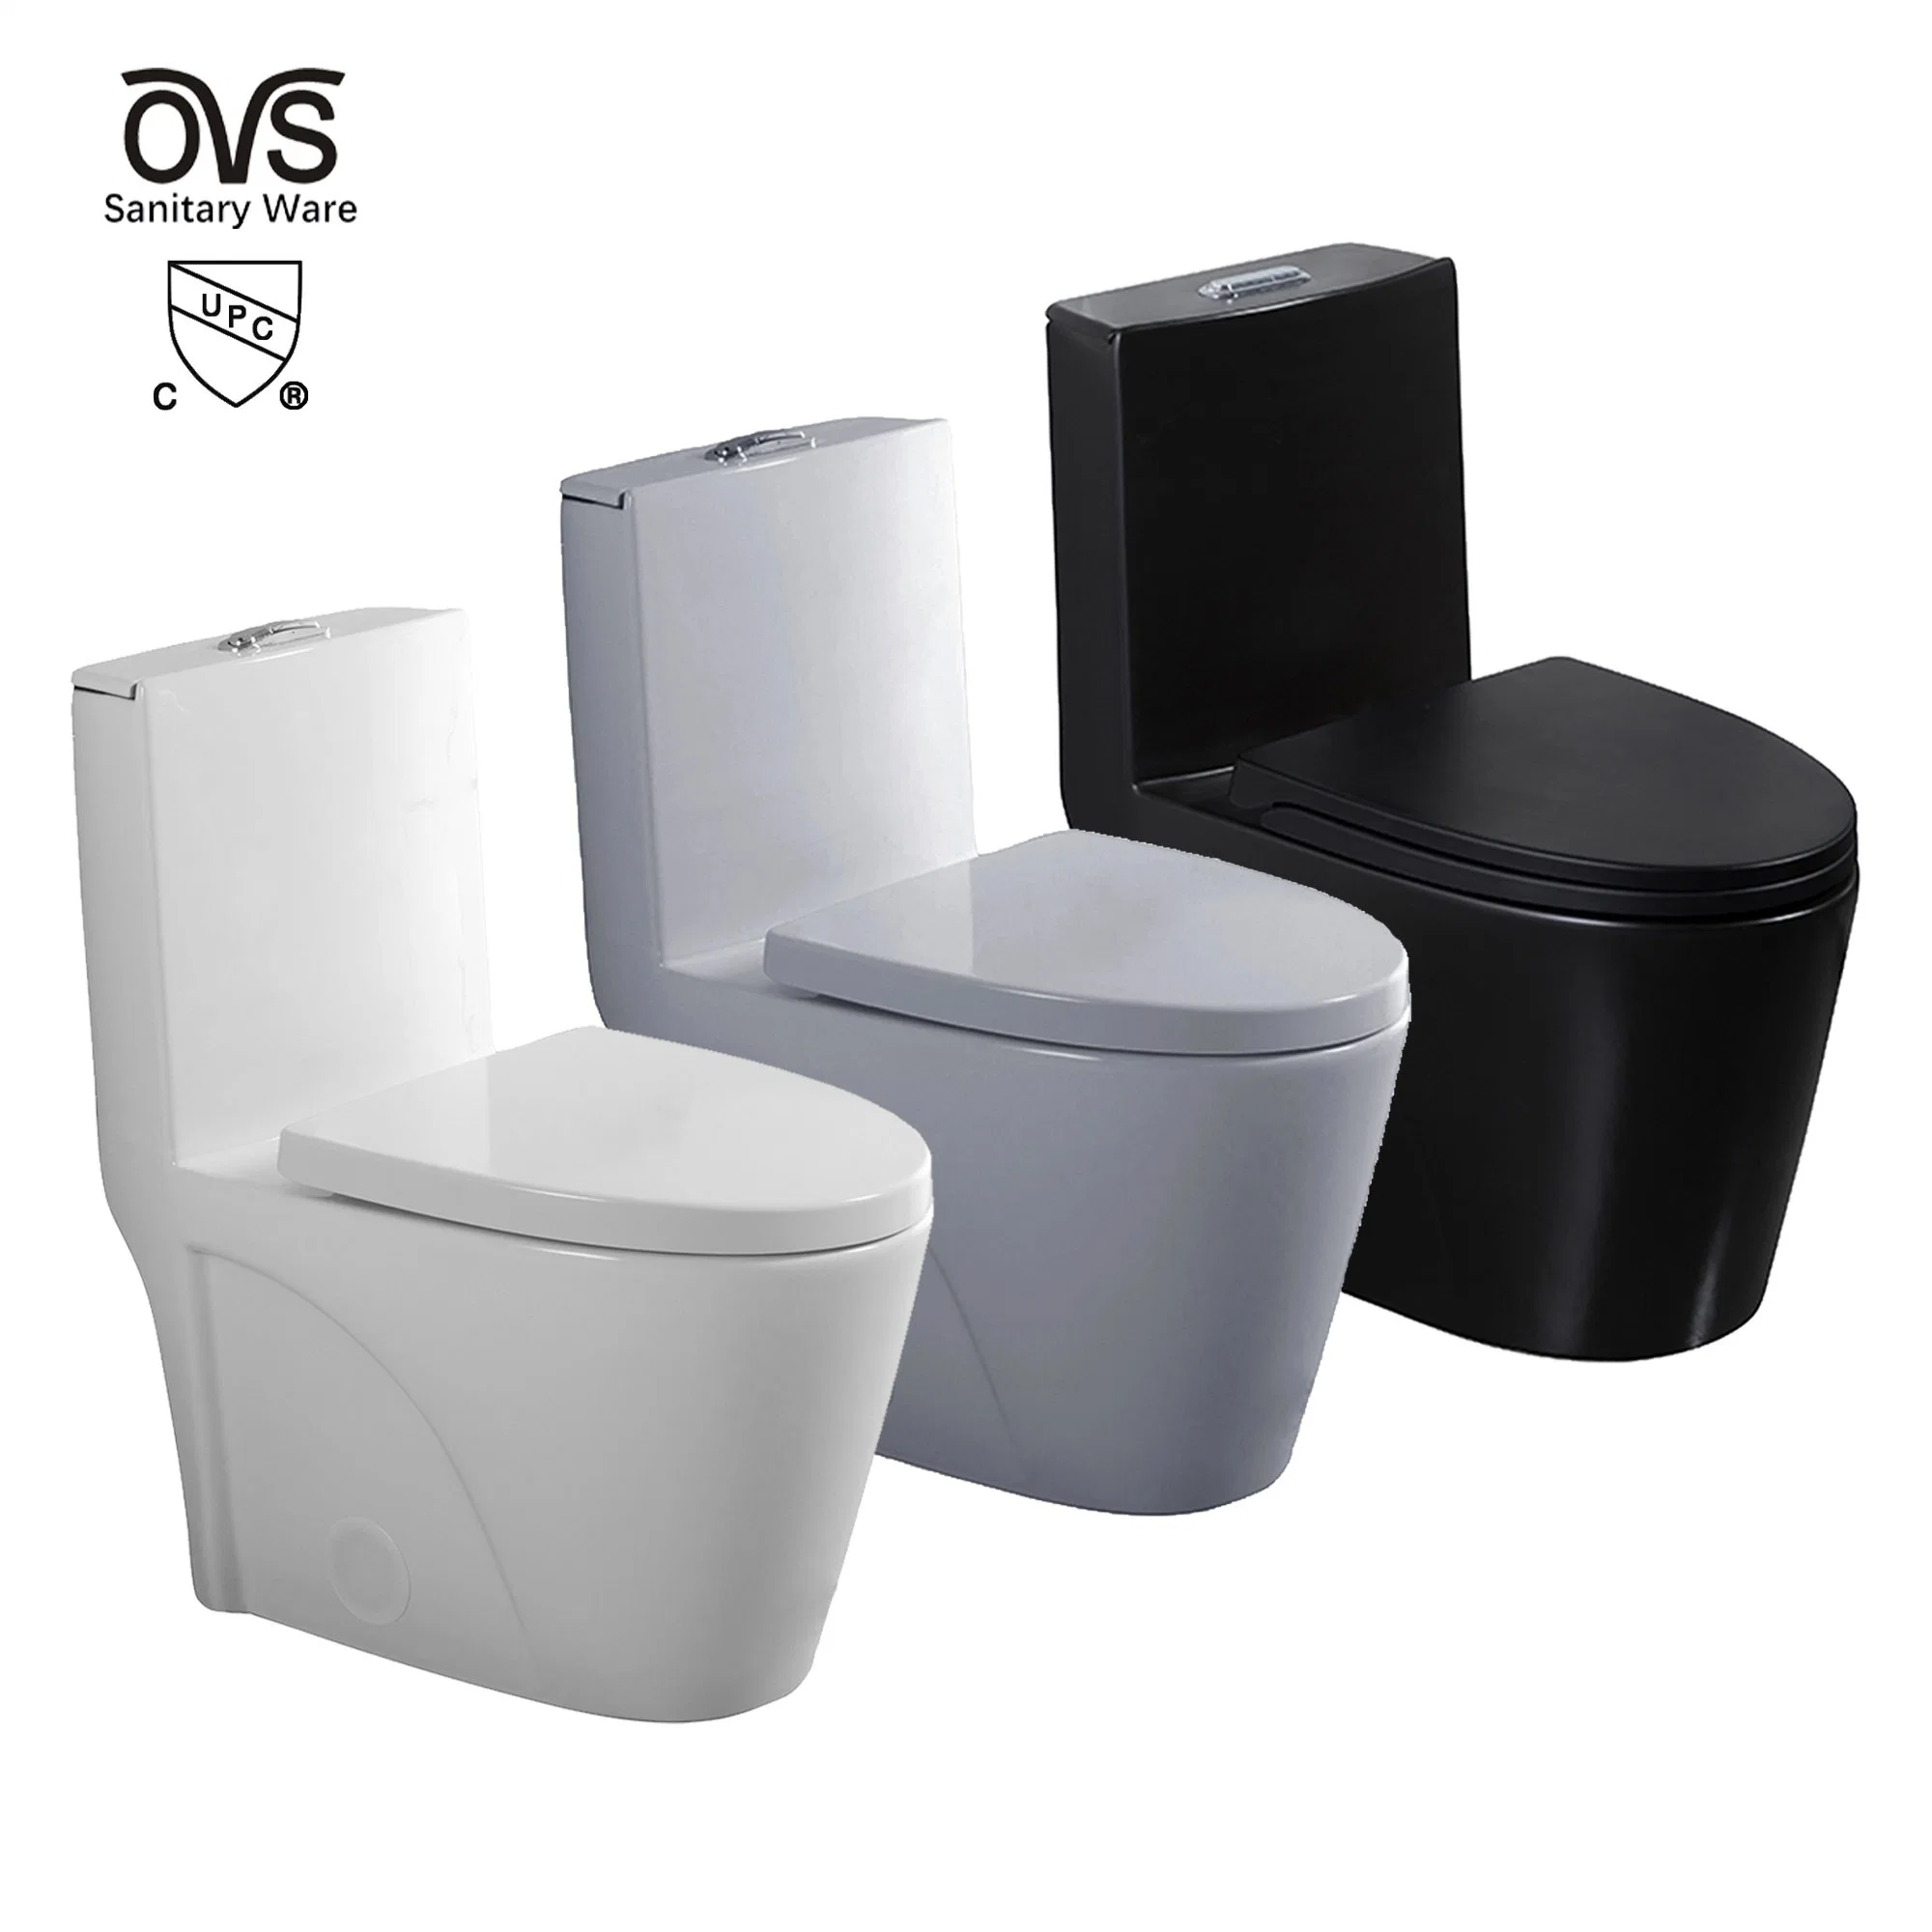 Ovs Cupc Северной Америки в ванной комнате керамическая из одного куска Wc Китайский Туалет роскошь санитарных продовольственный стандартный черный Commode туалеты